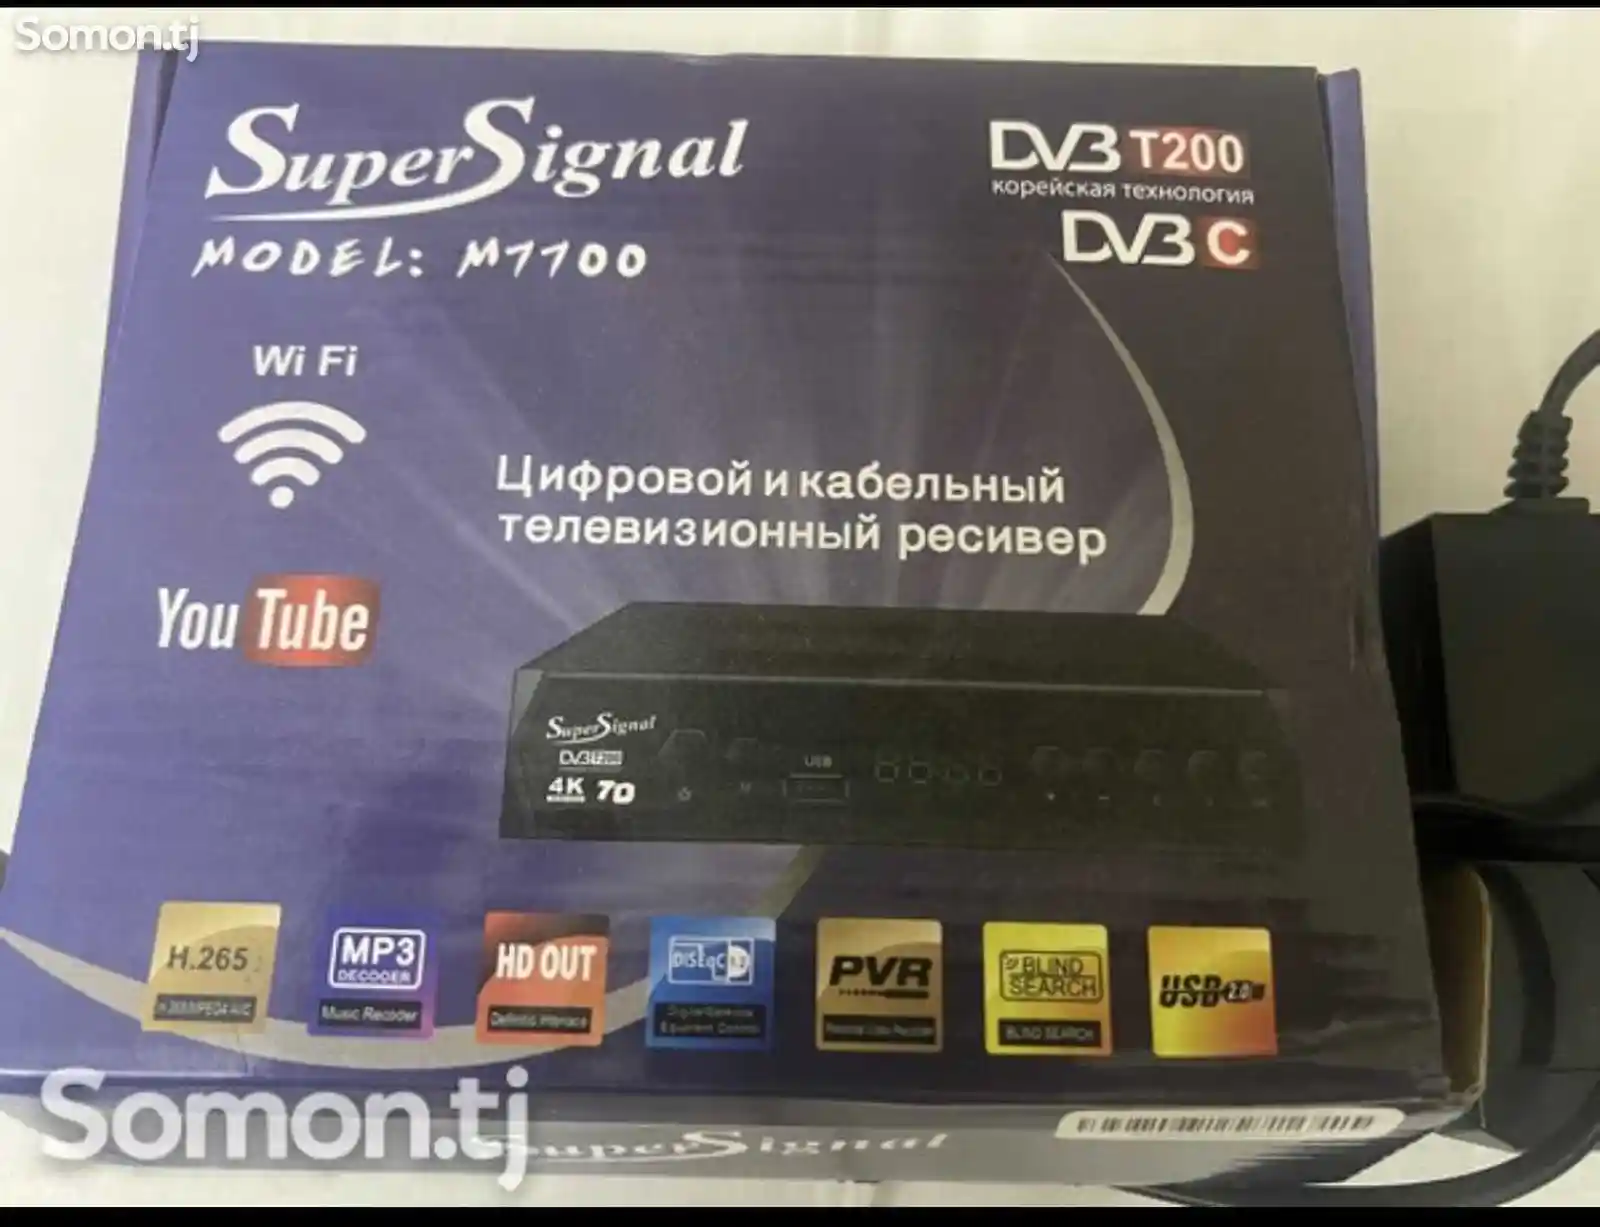 Цифровой и кабельный телевизионный ресивер-1